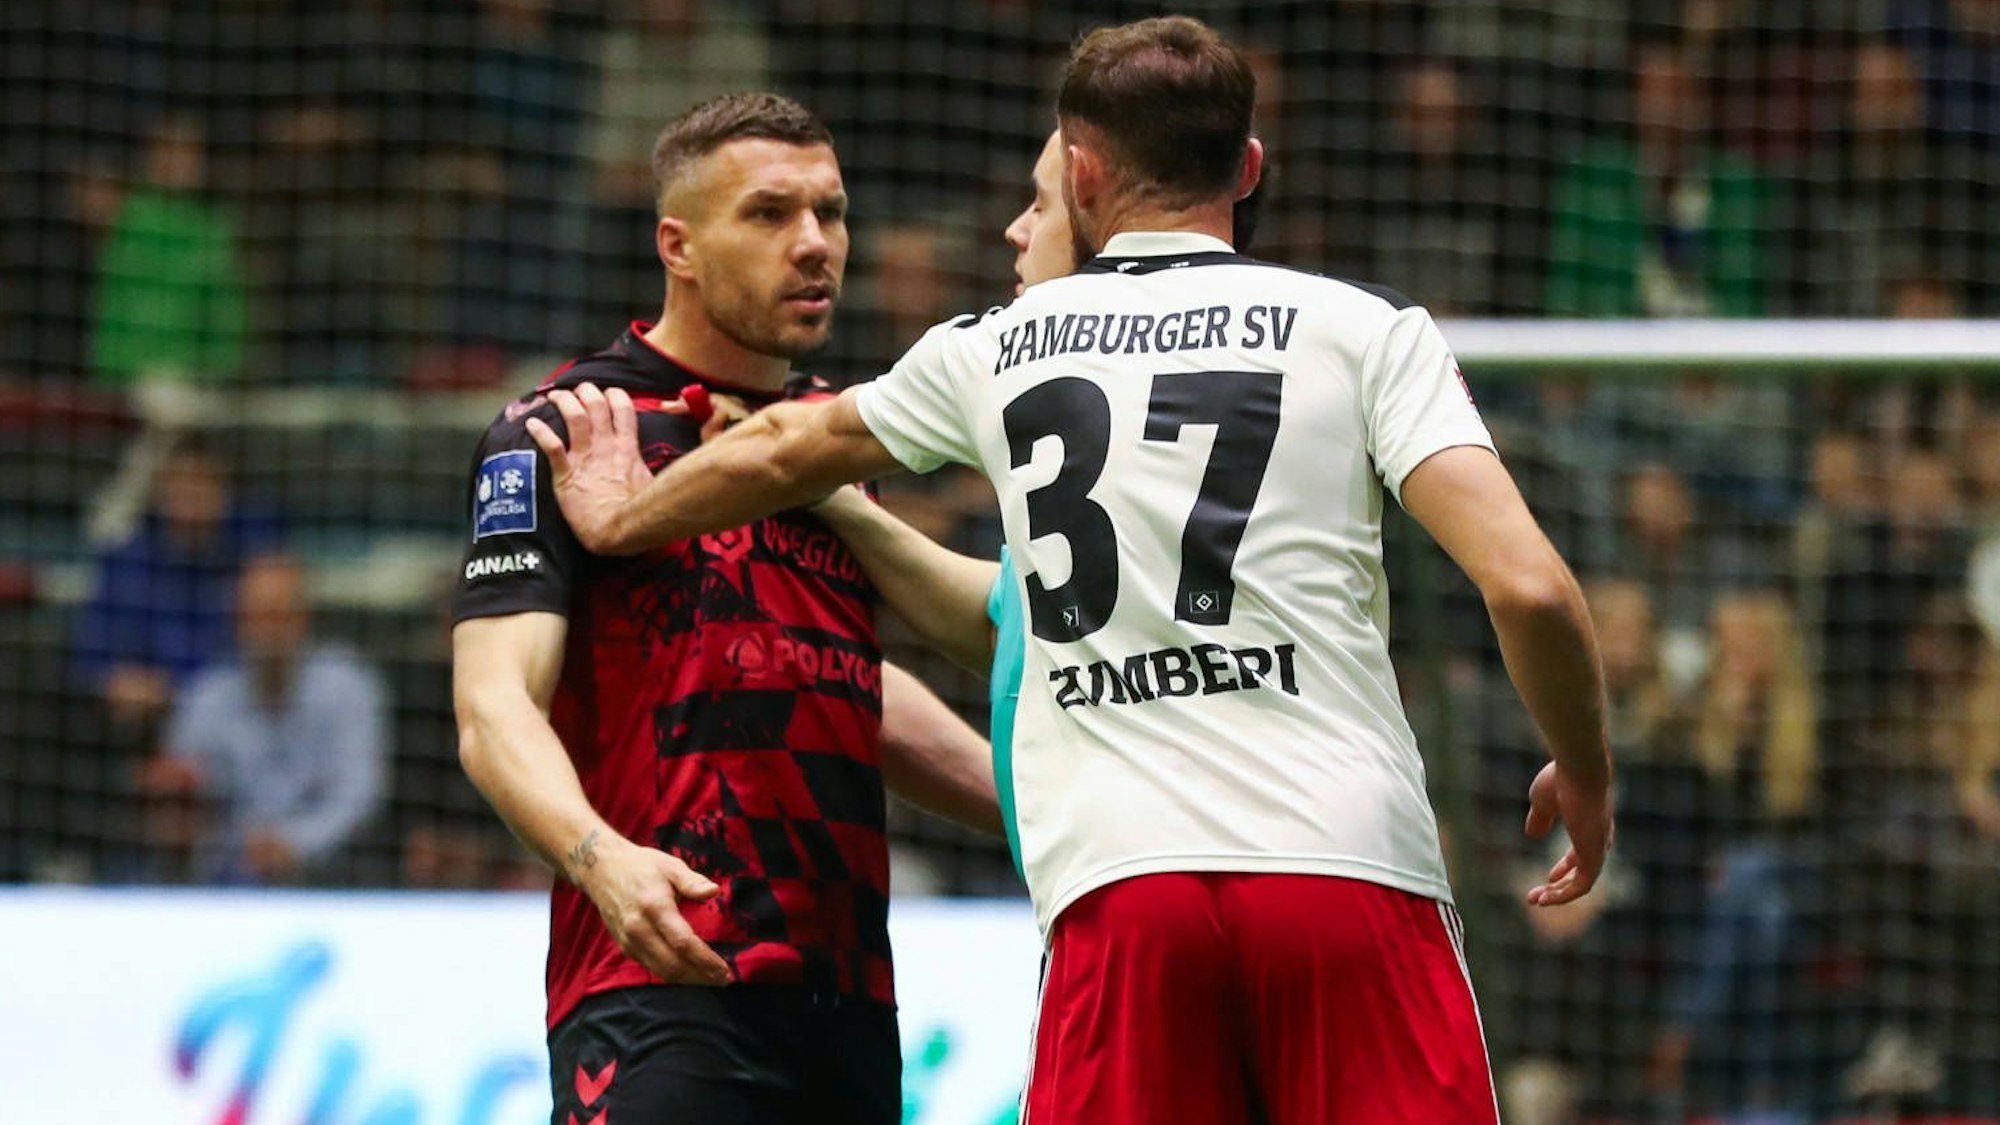 Lukas Podolski wird von einem Mann im weißen Trikot an der Schulter gefasst. Er schaut wütend.